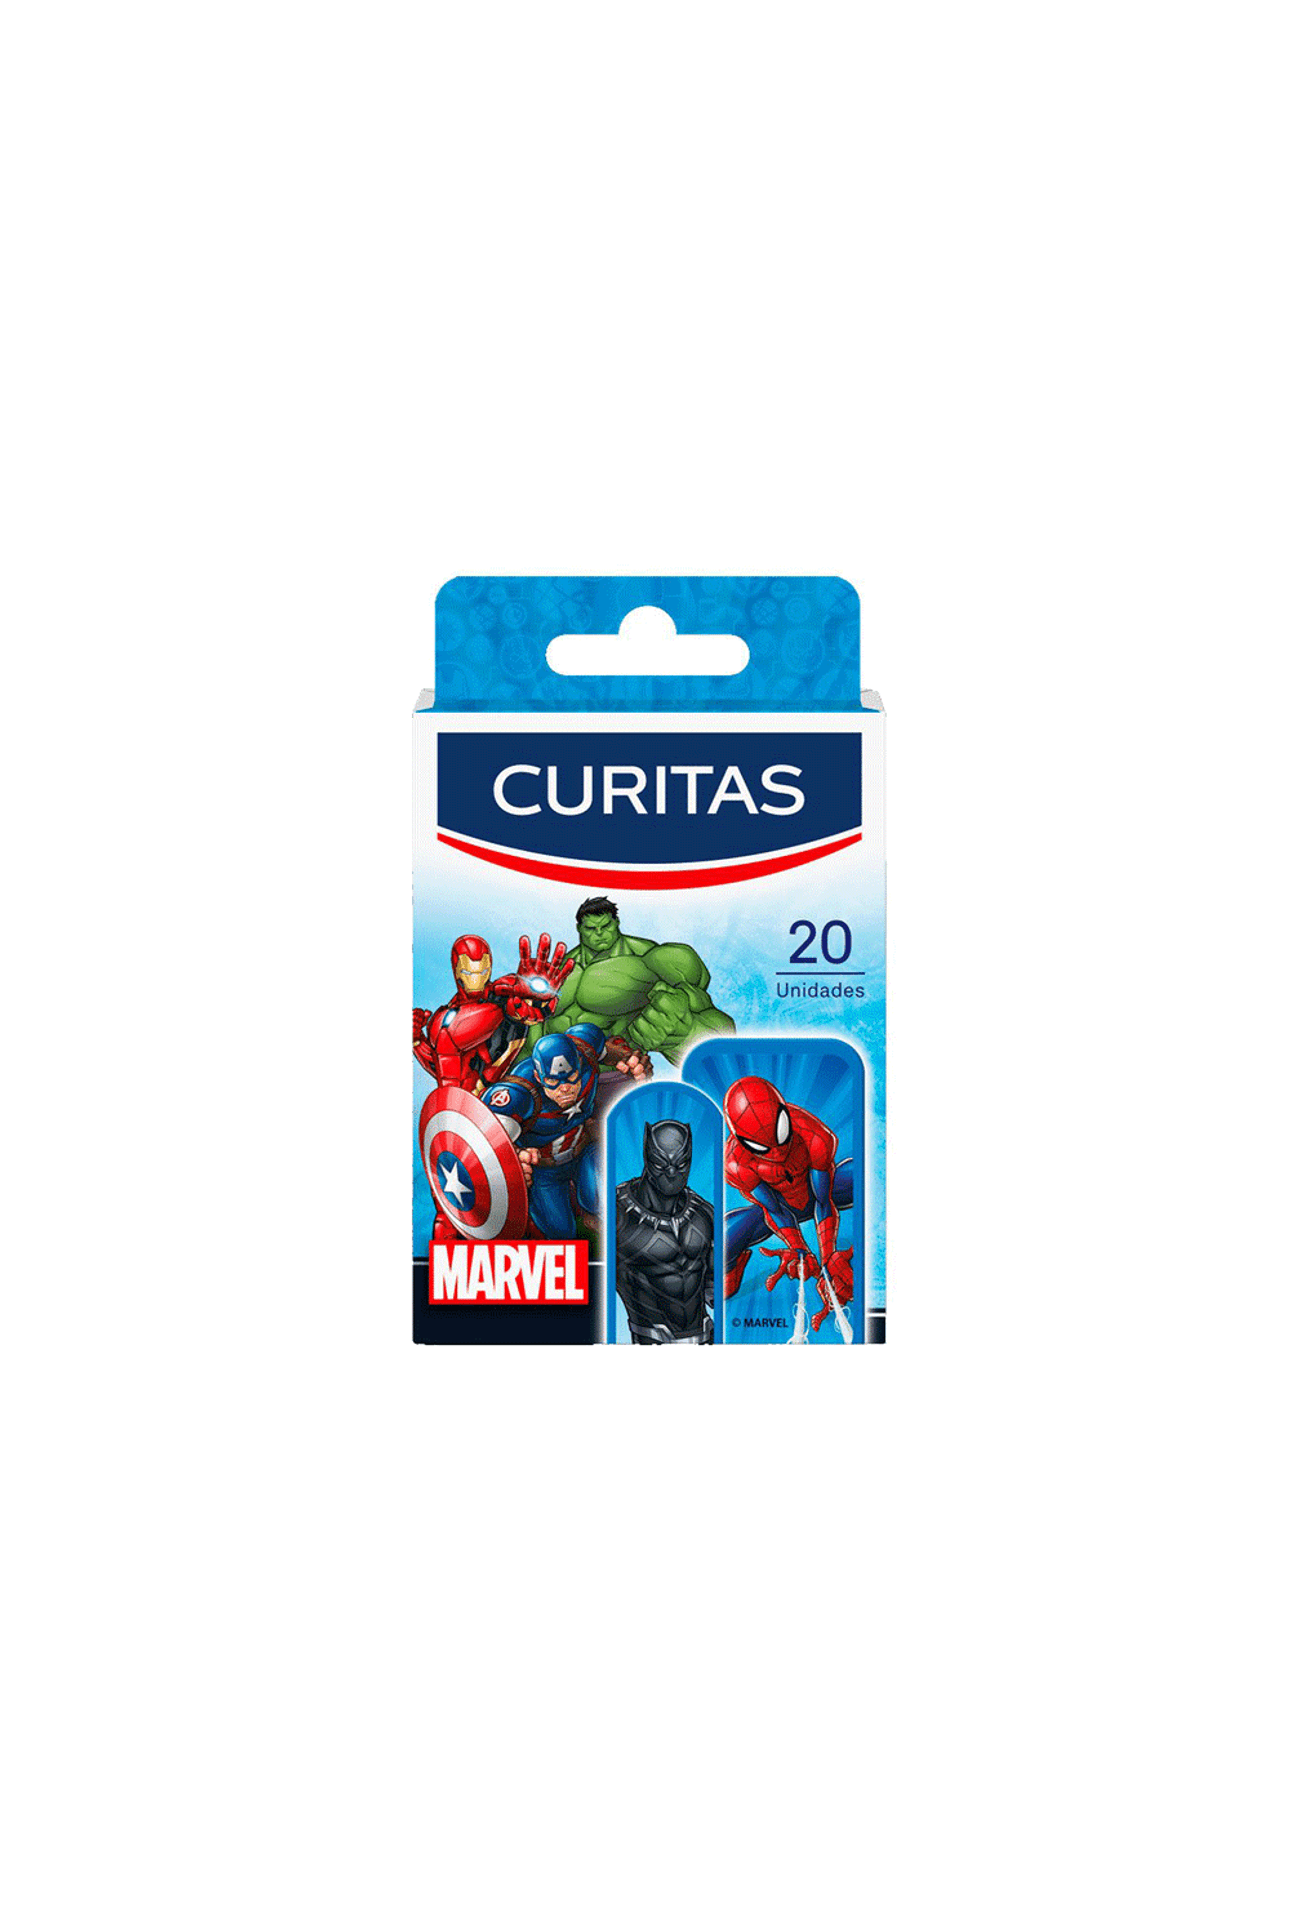 Curitas-Curitas-Marvel-x-20un-7501054550044_img1